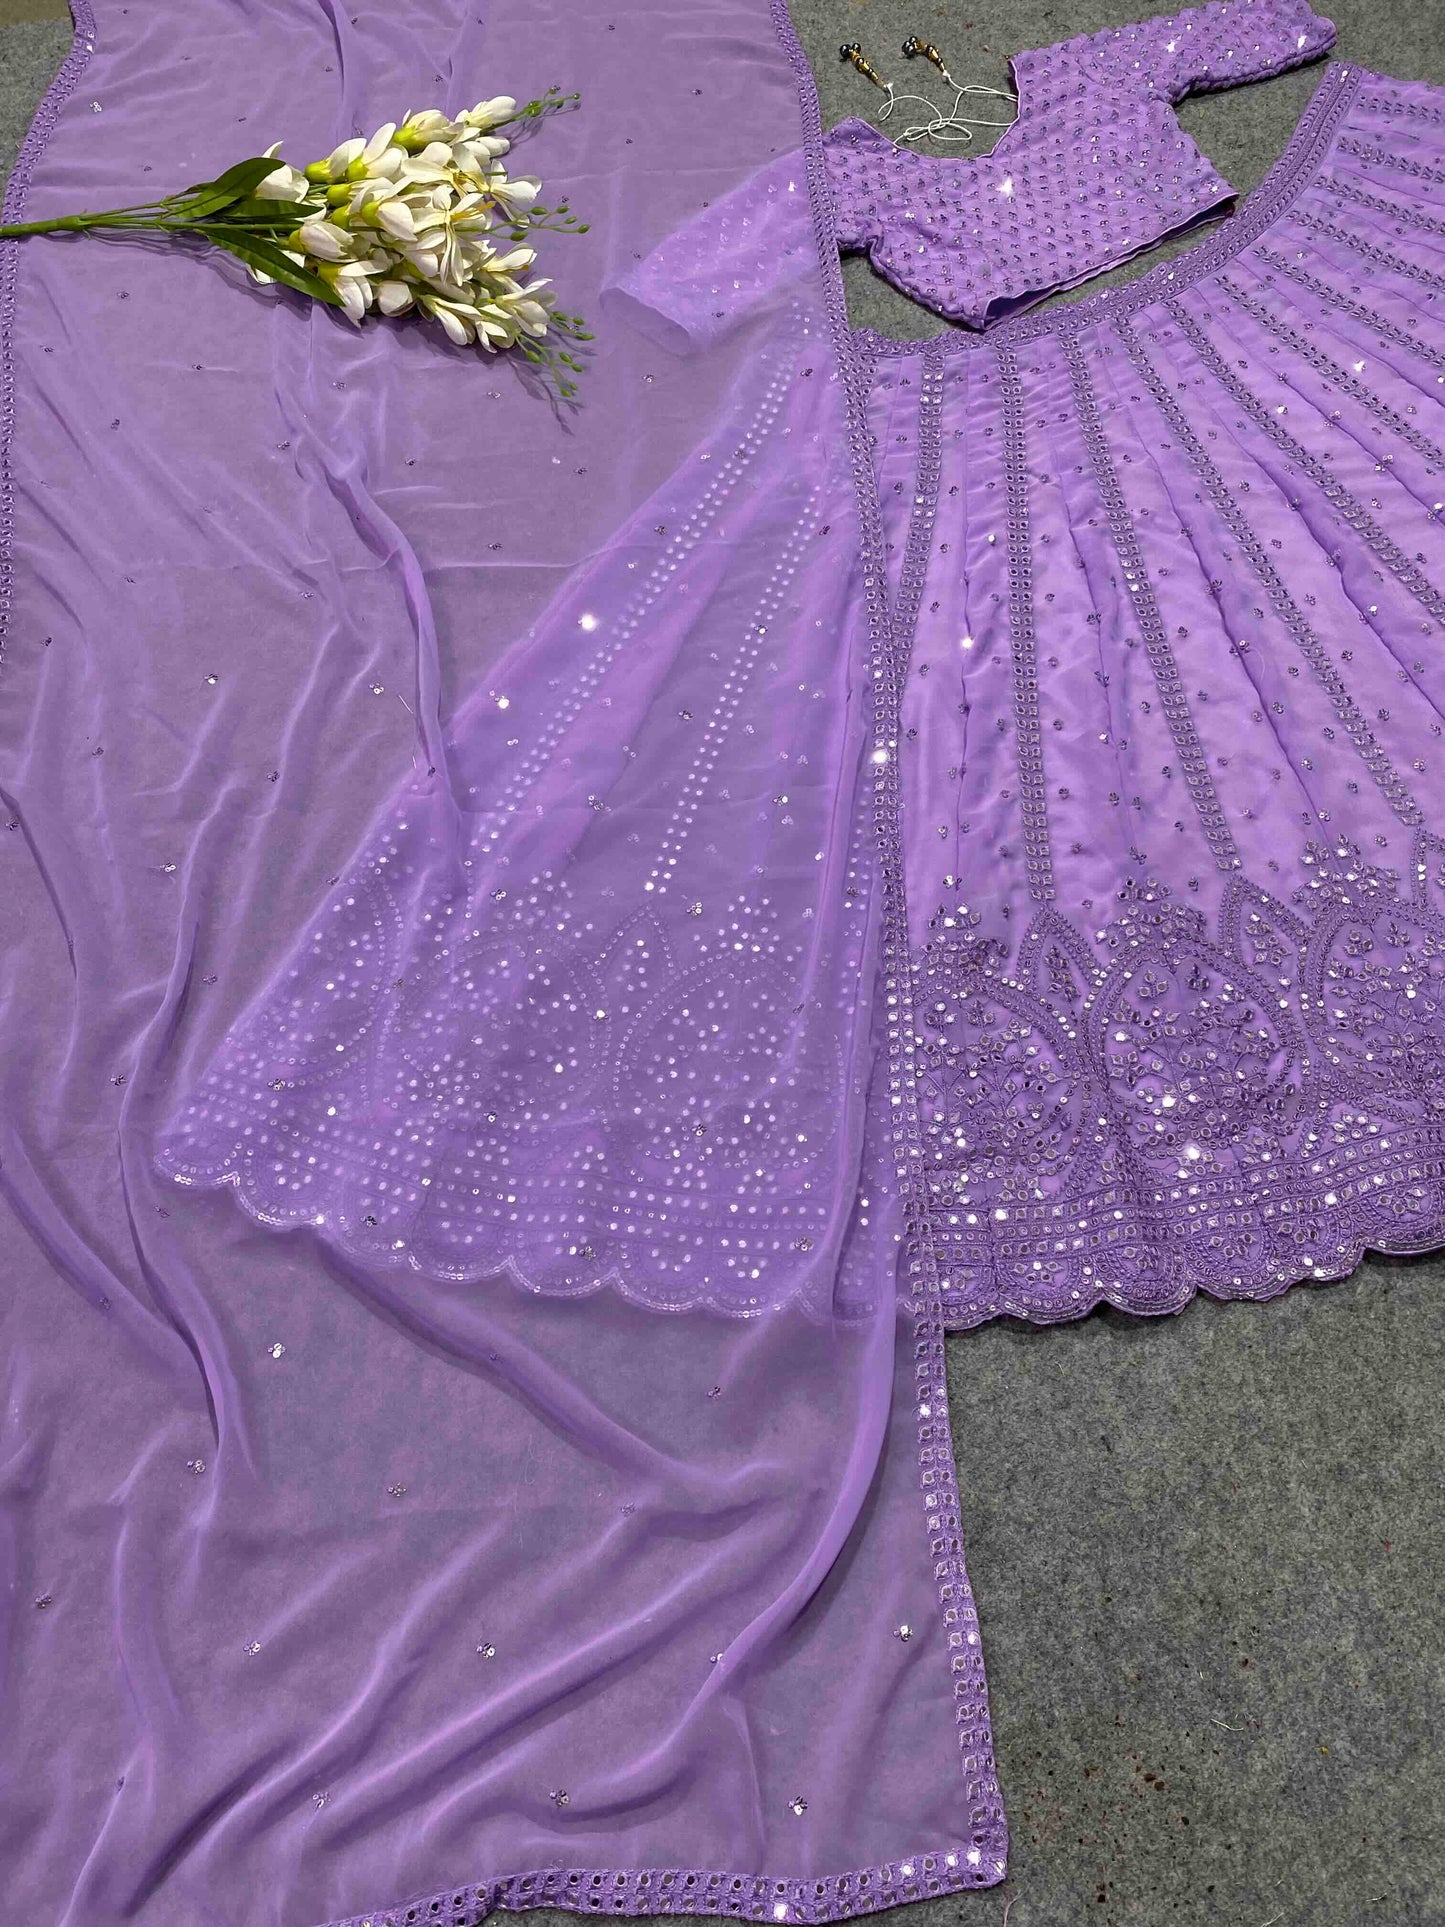 Premium Fully Embroidered Purple Lehenga Choli & Dupatta Set , Purple Lehenga Choli , Bridesmaid Lehenga , Bridal Lehenga